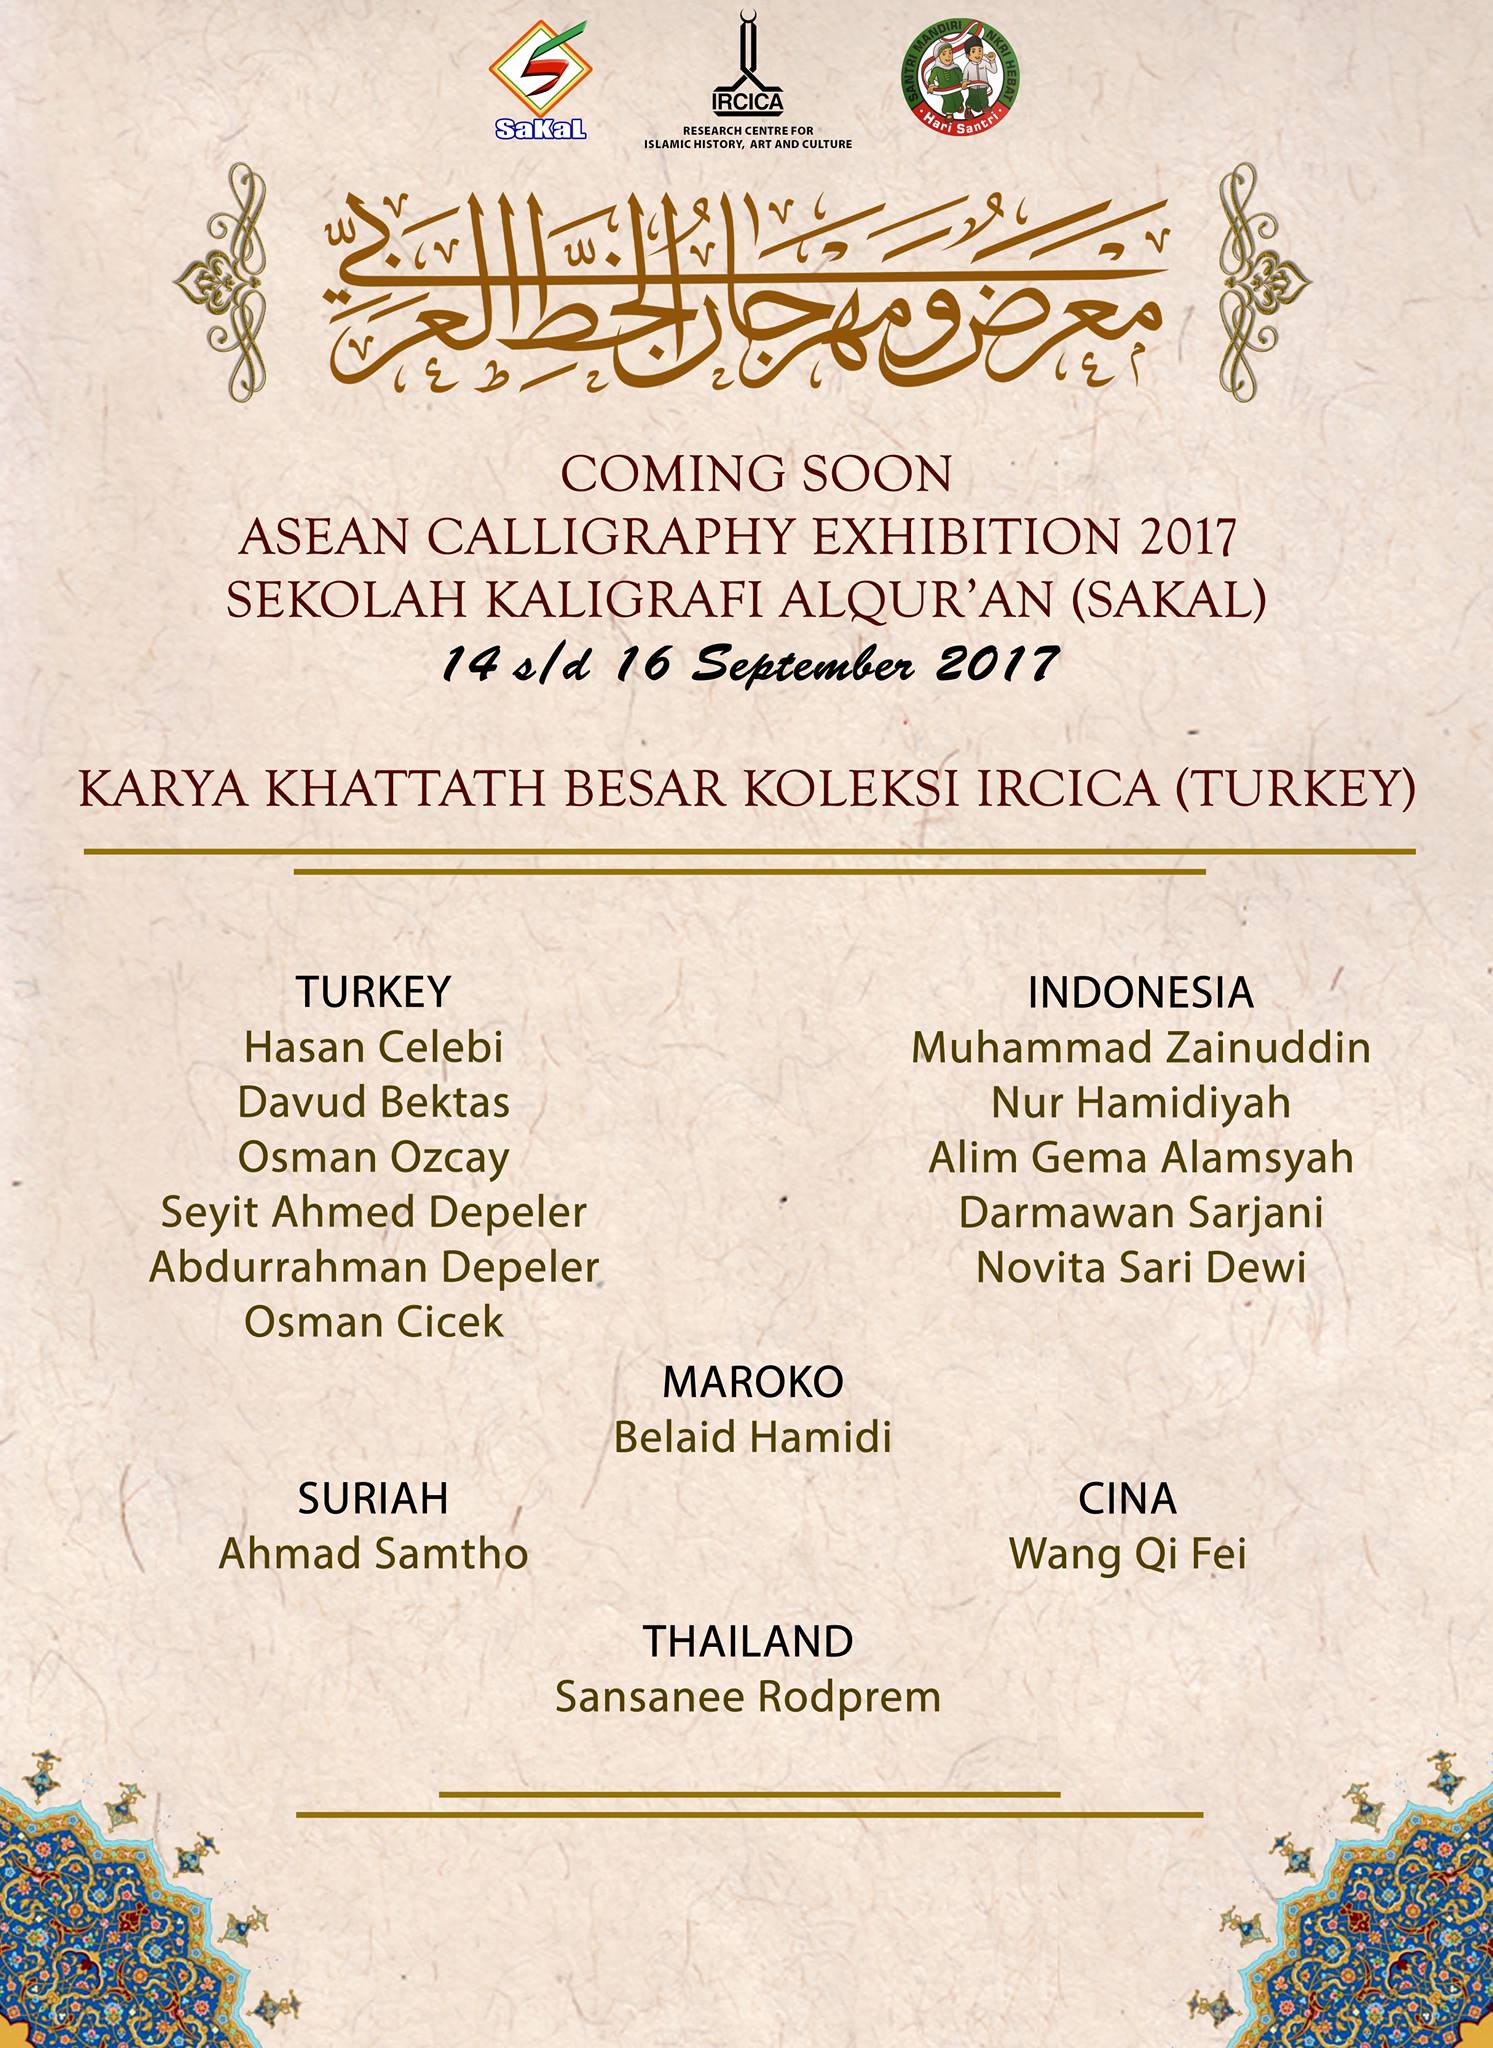 Download COMING SOON ASEAN CALLIGRAPHY EXHIBITION 
Melengkapi pameran ijazah Asean SAKAL…